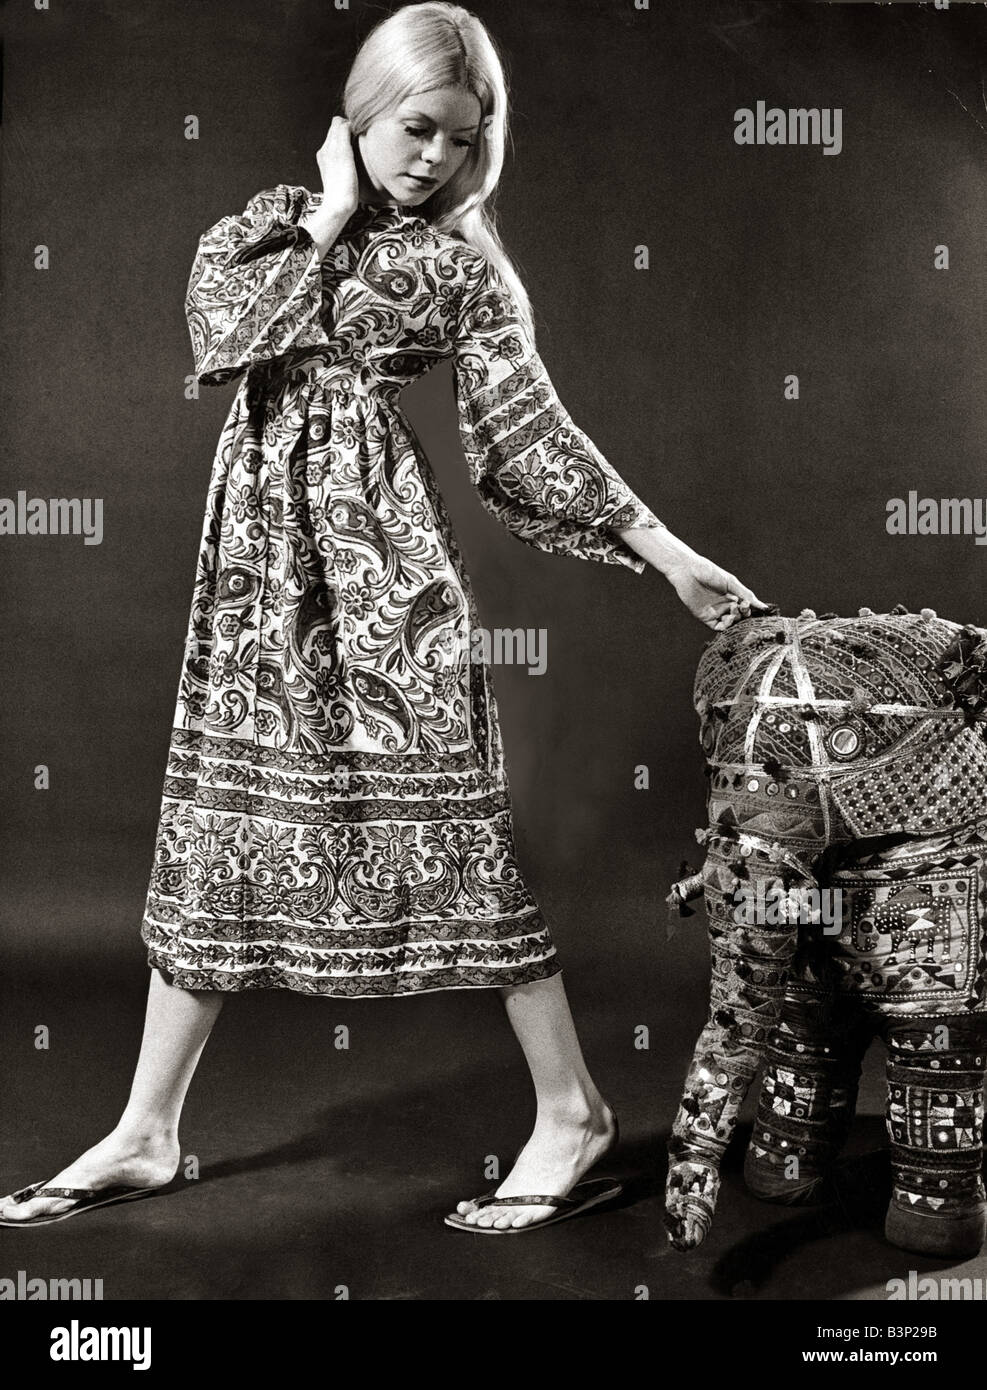 Ein Modell trägt ein swirly print MIDI-Kleid mit weiten Glockenärmeln hergestellt aus indischer Baumwolle Bettdecke Material und Sandalen 1970 Mode weibliche Frau Frauen Frauen Kleidung sommerlich Sommer Spiegel Tagwache jack Curtis 20 6 70 Stockfoto